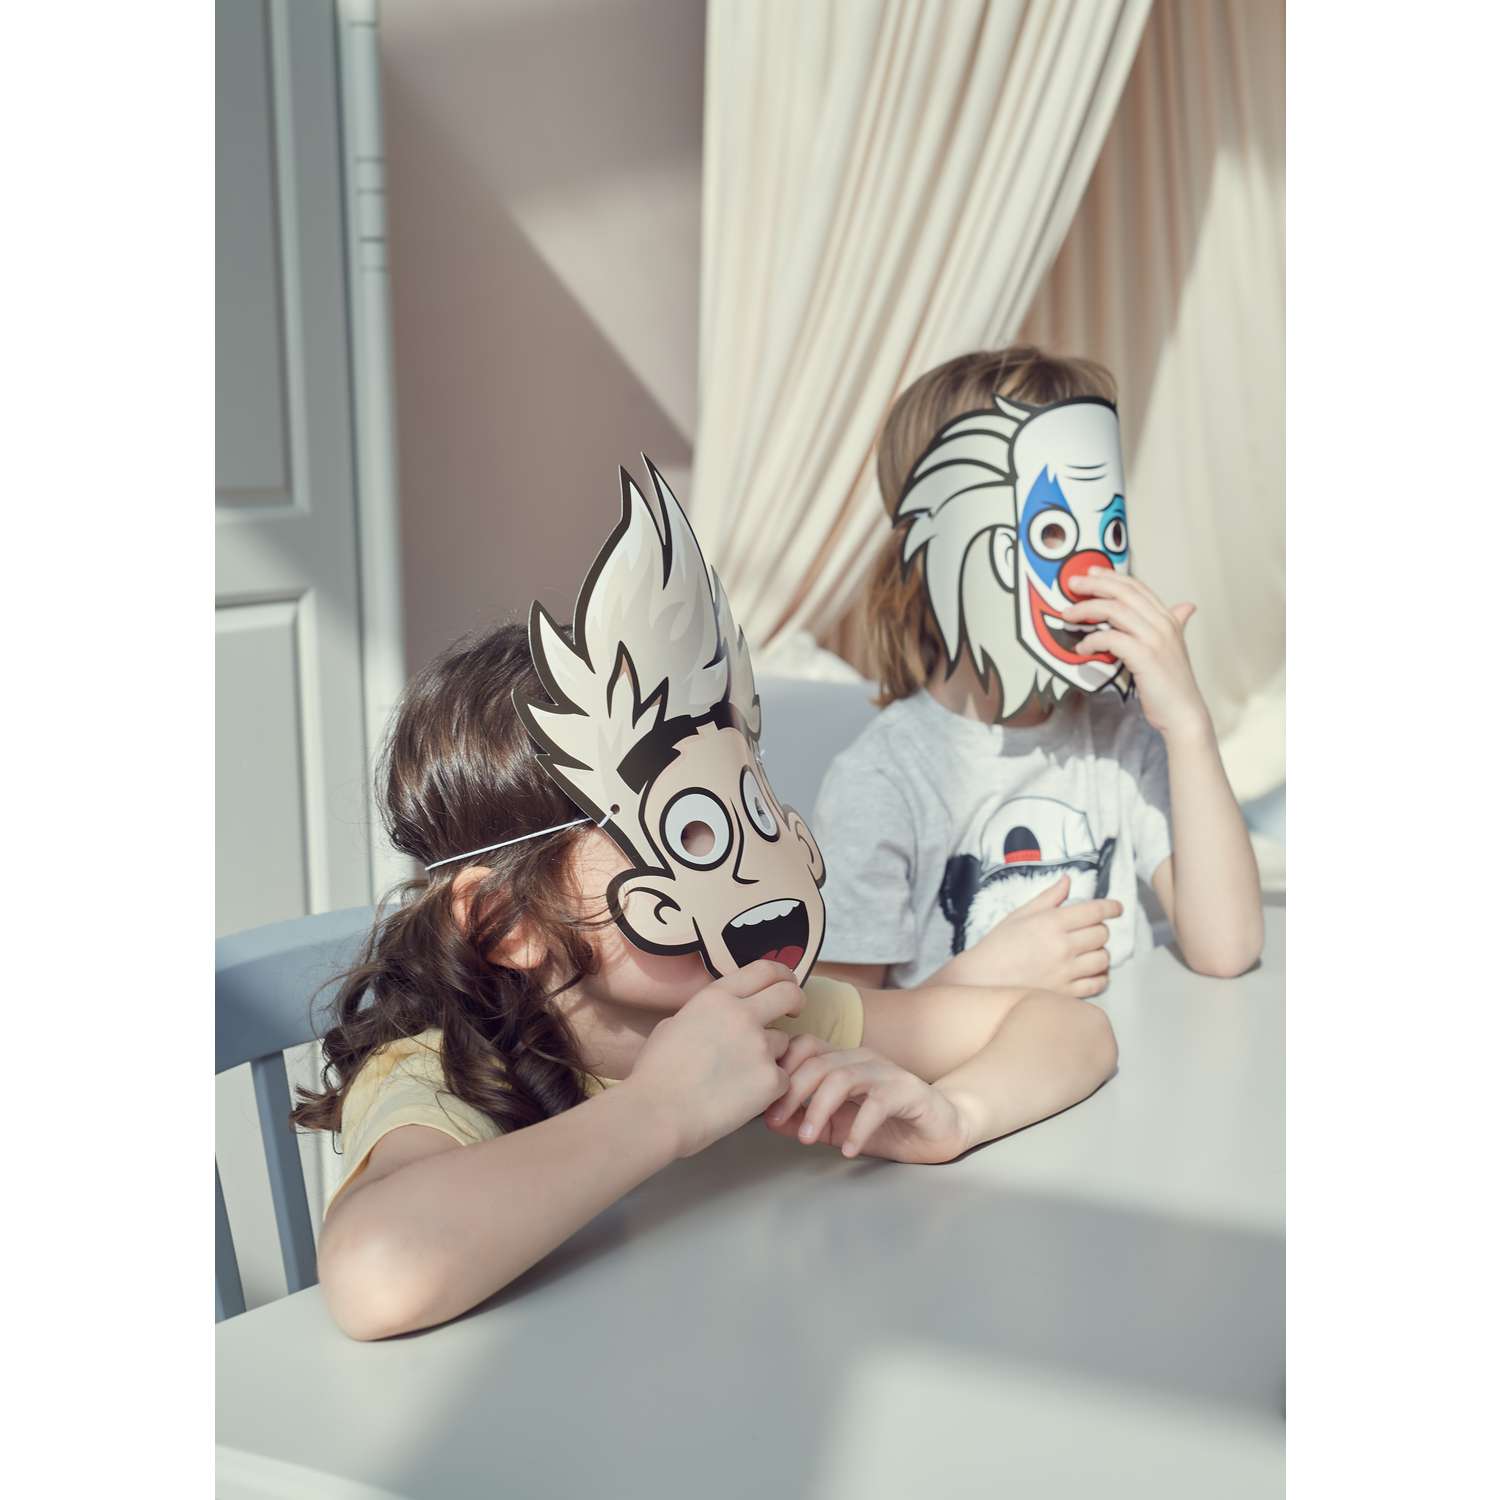 Карнавальные маски из бумаги своими руками: мастерим с детьми